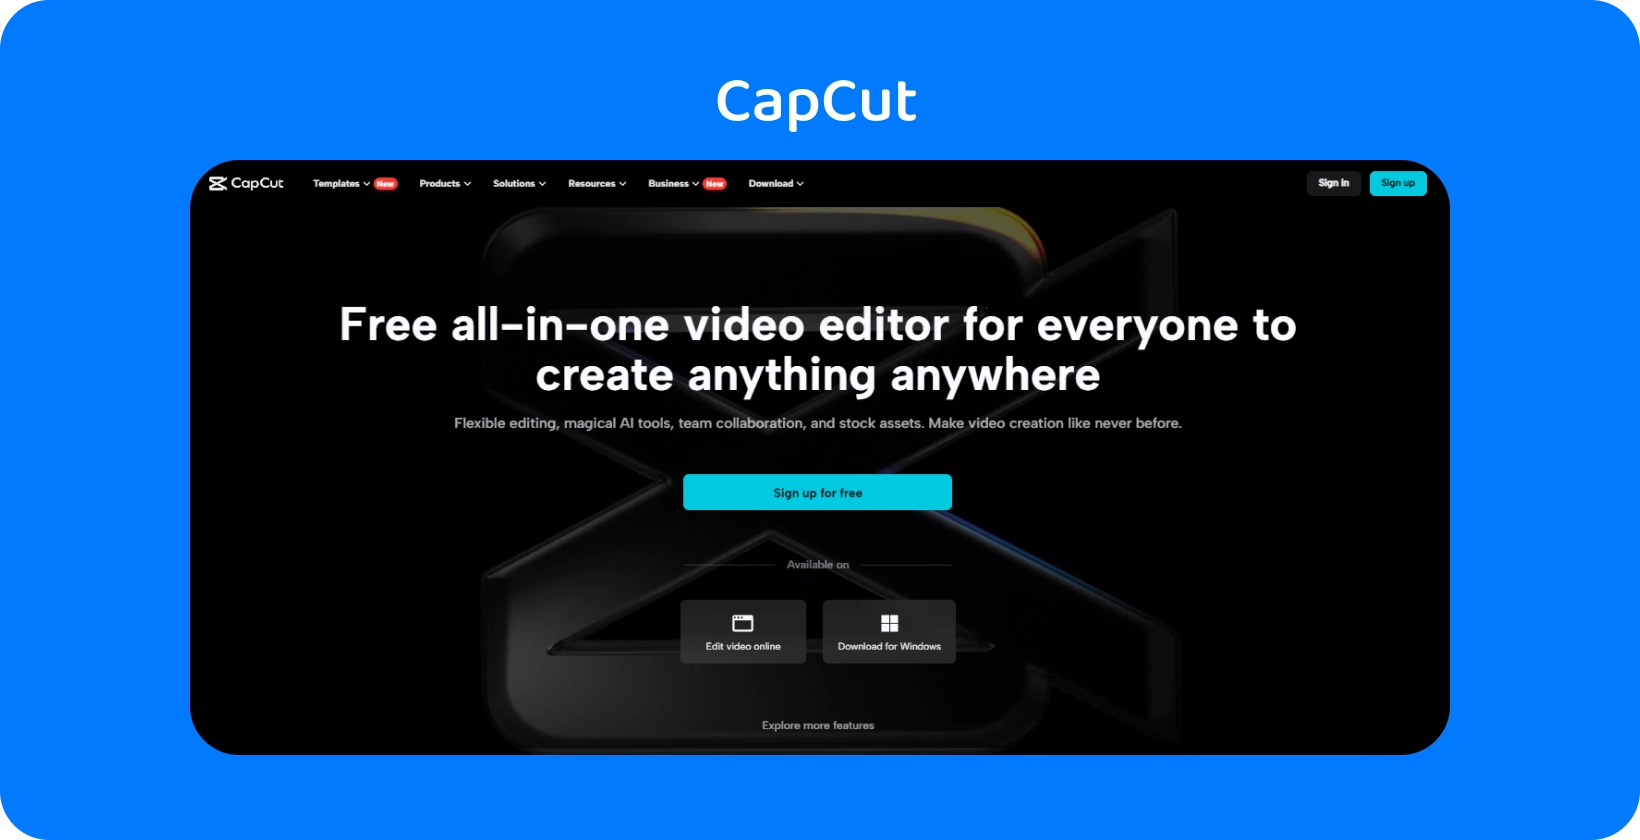 CapCut stranica na kojoj se prikazuje besplatan video uređivač "all-in-one" uređaja za kreiranje sadržaja na bilo kom uređaju, sa tamnim i elegantnim dizajnom.
